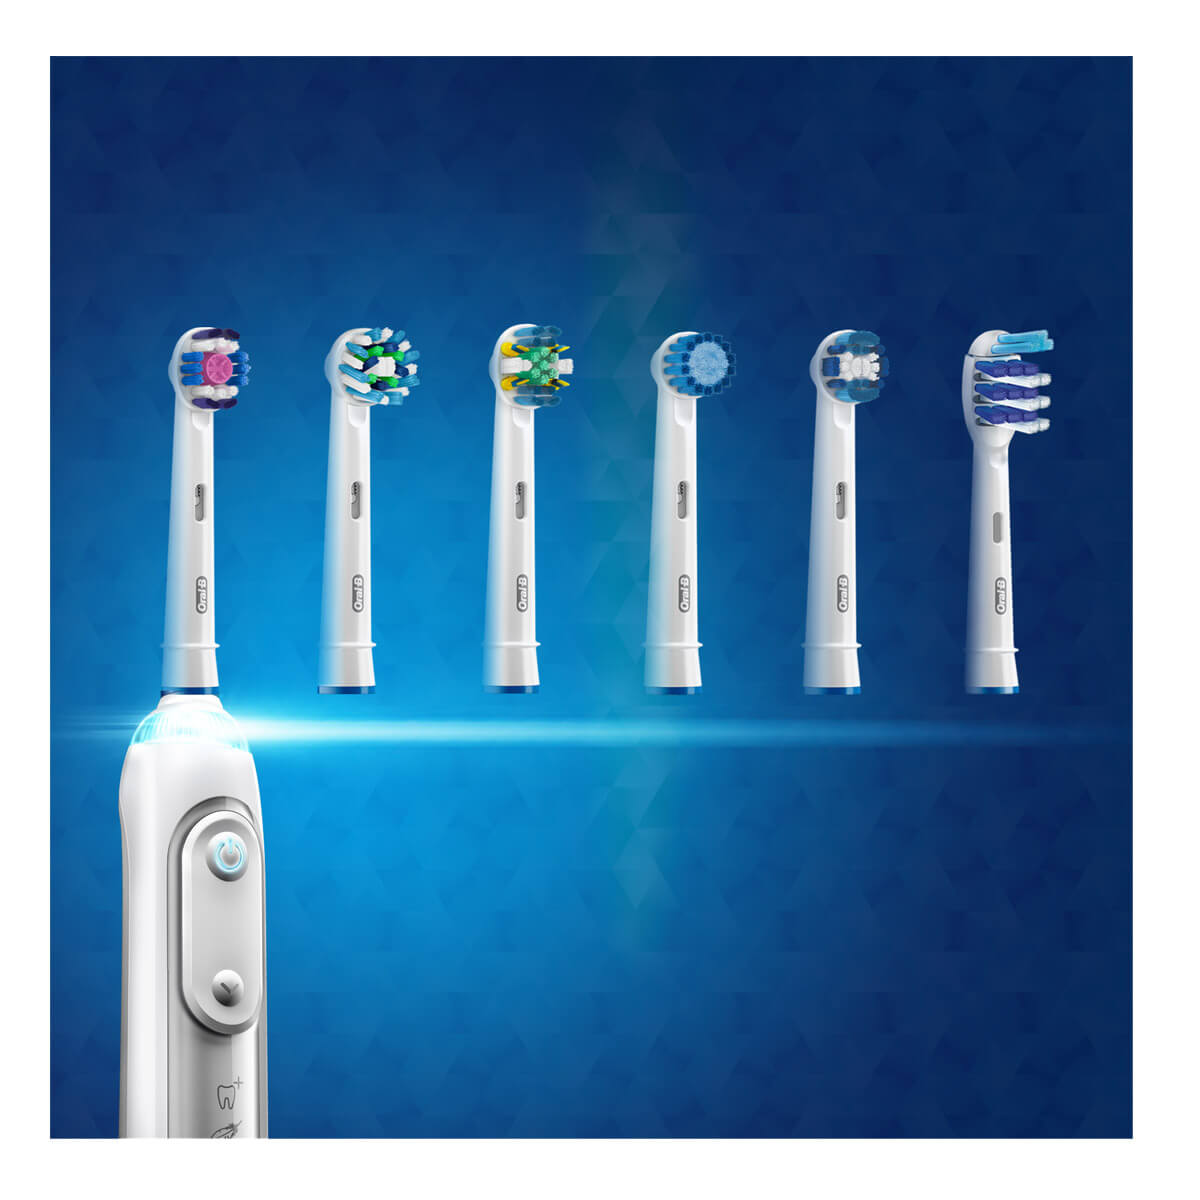 20 x Testine di ricambio compatibile per spazzolino elettrico Oral B